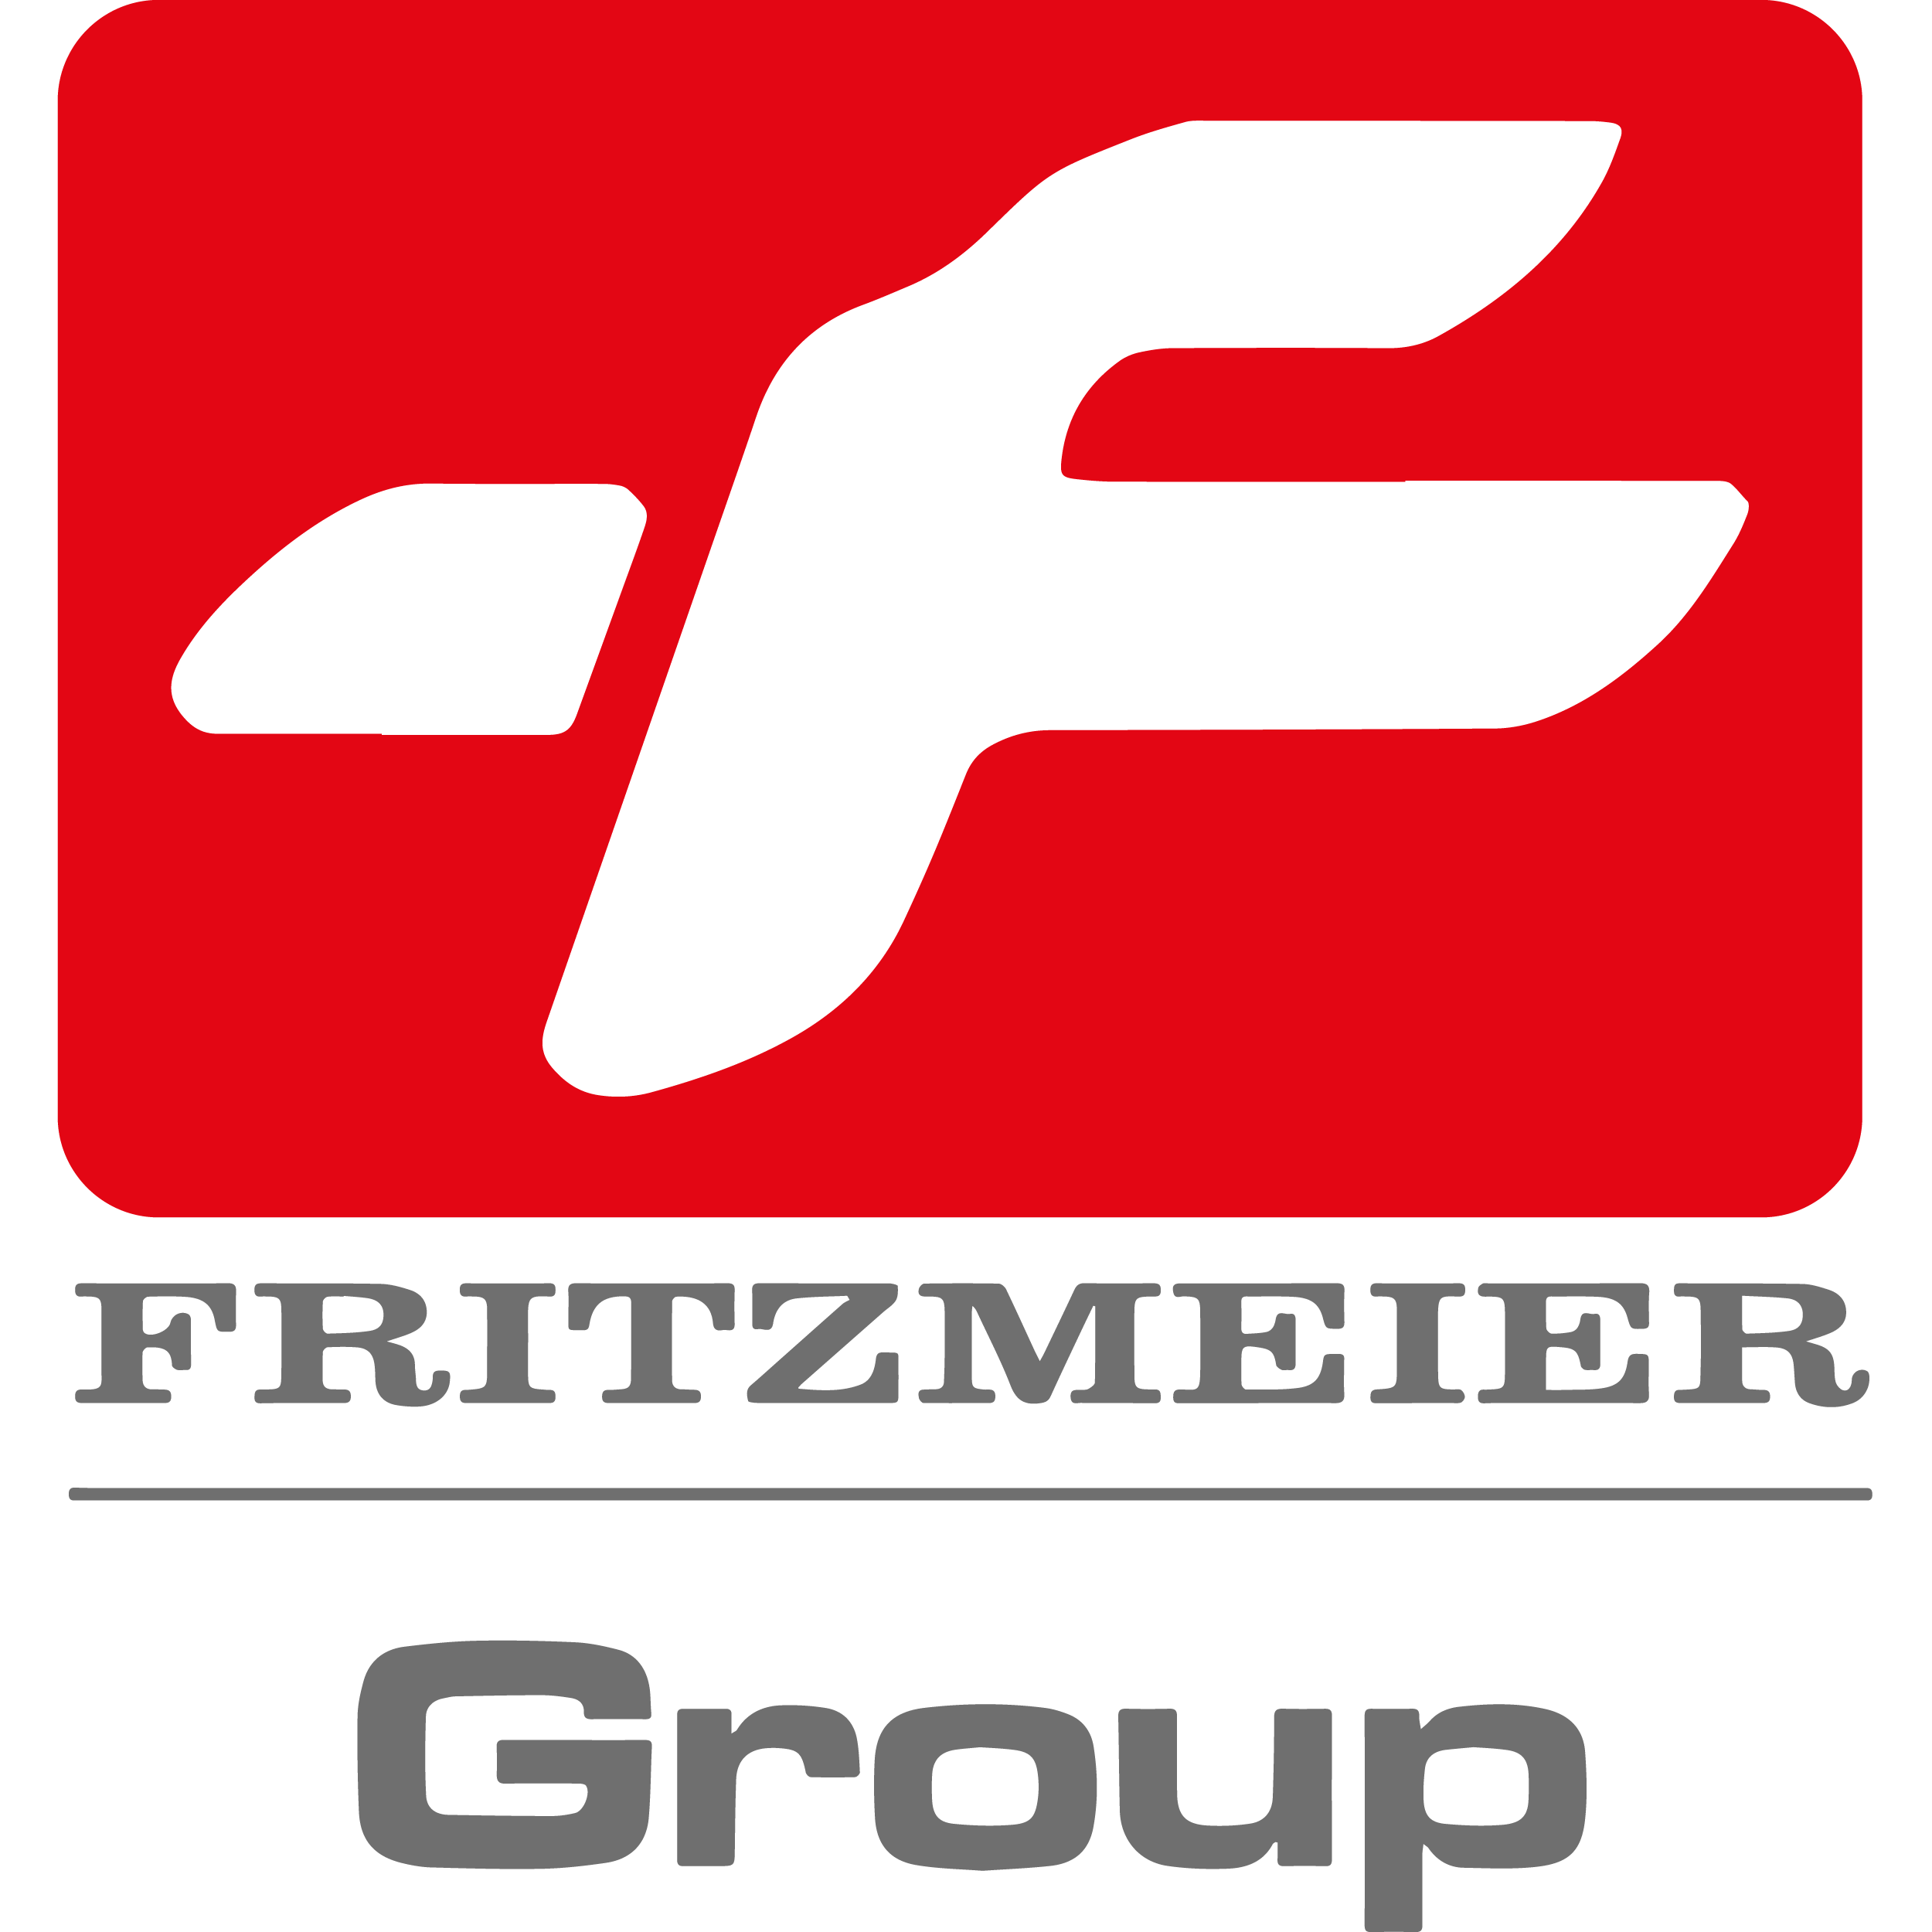 Fritzmeier